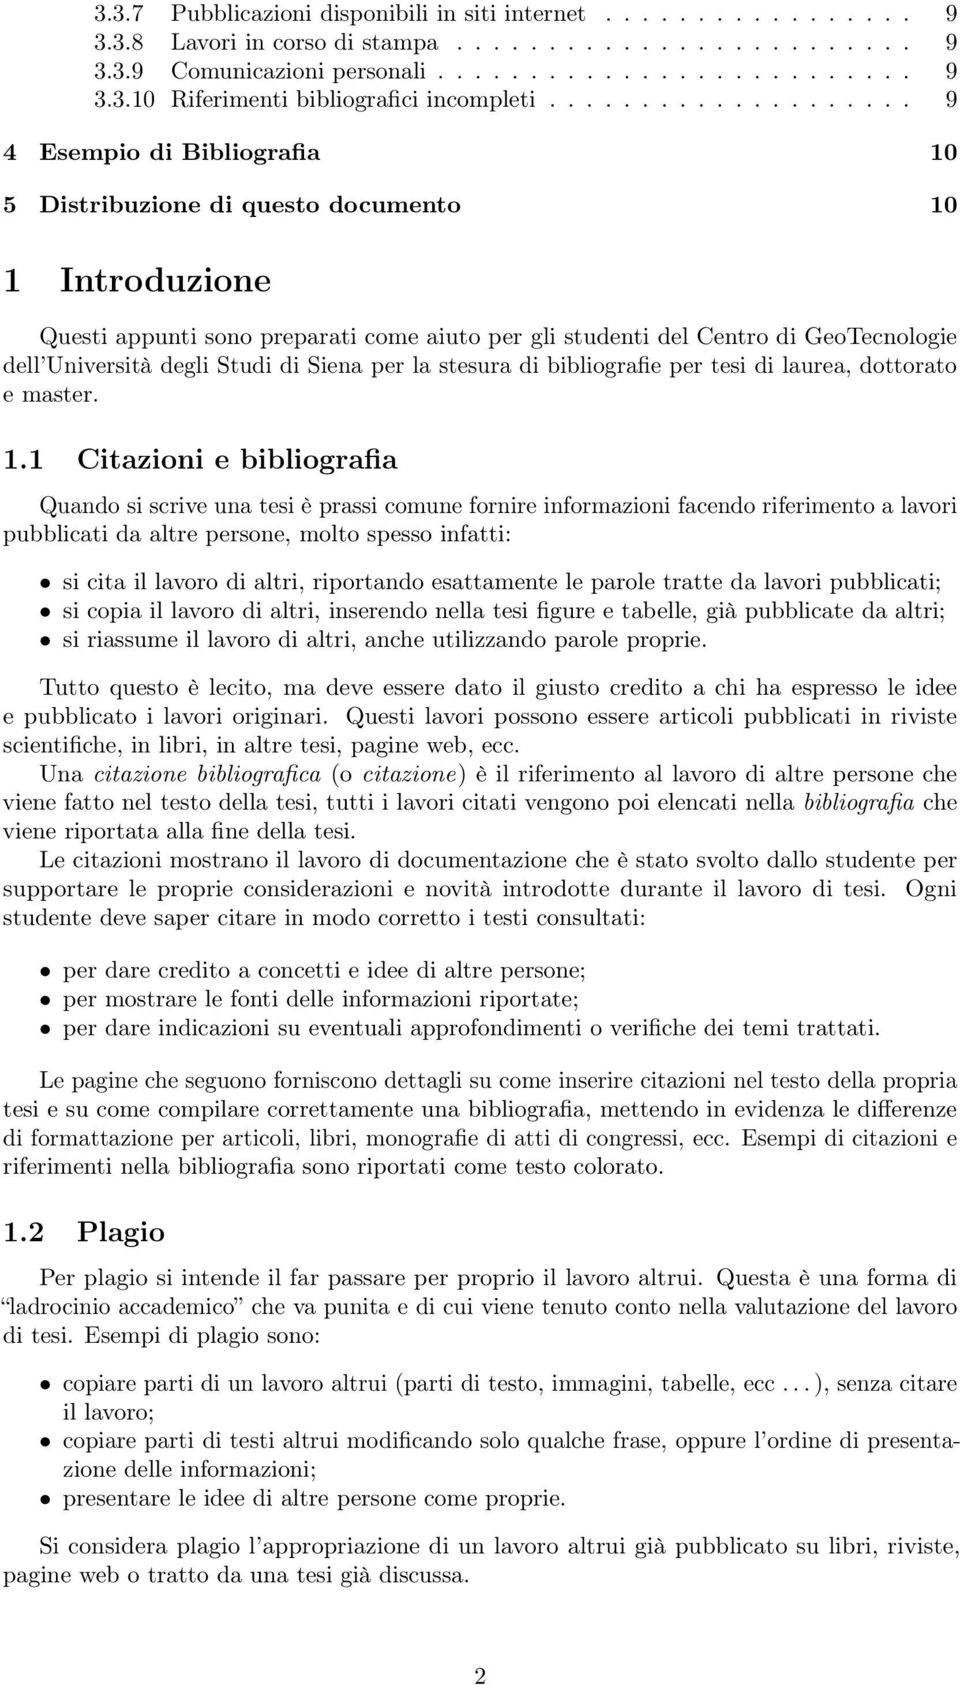 Università degli Studi di Siena per la stesura di bibliografie per tesi di laurea, dottorato e master. 1.